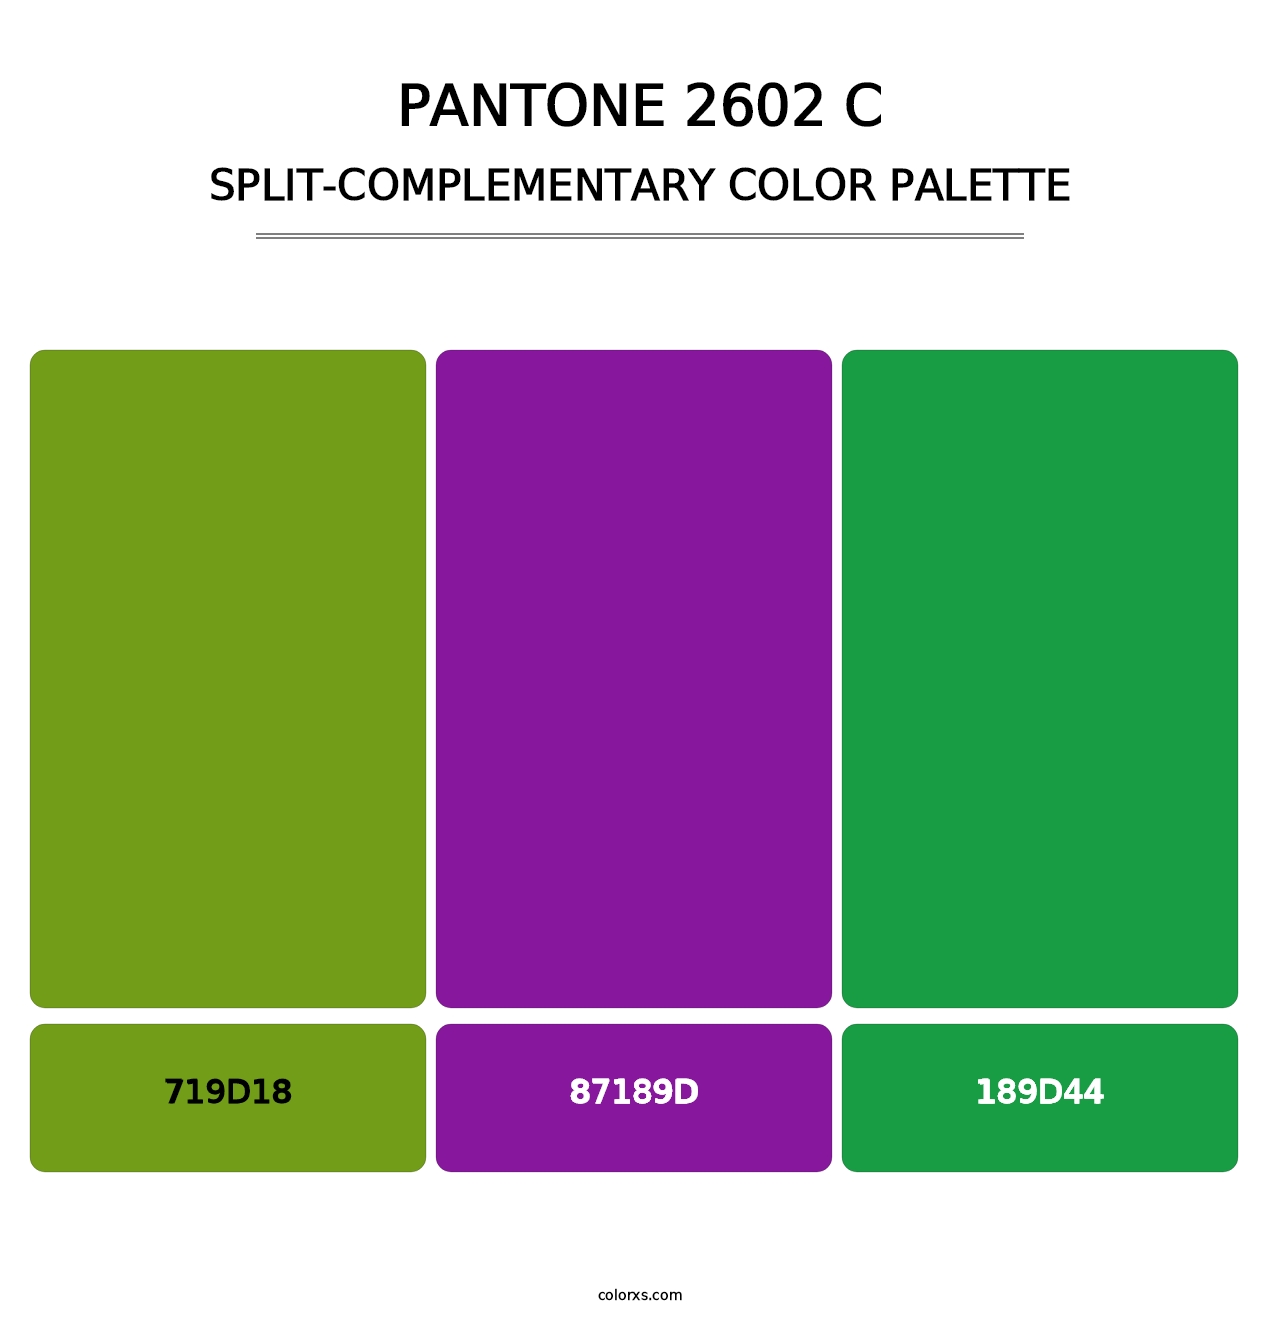 PANTONE 2602 C - Split-Complementary Color Palette